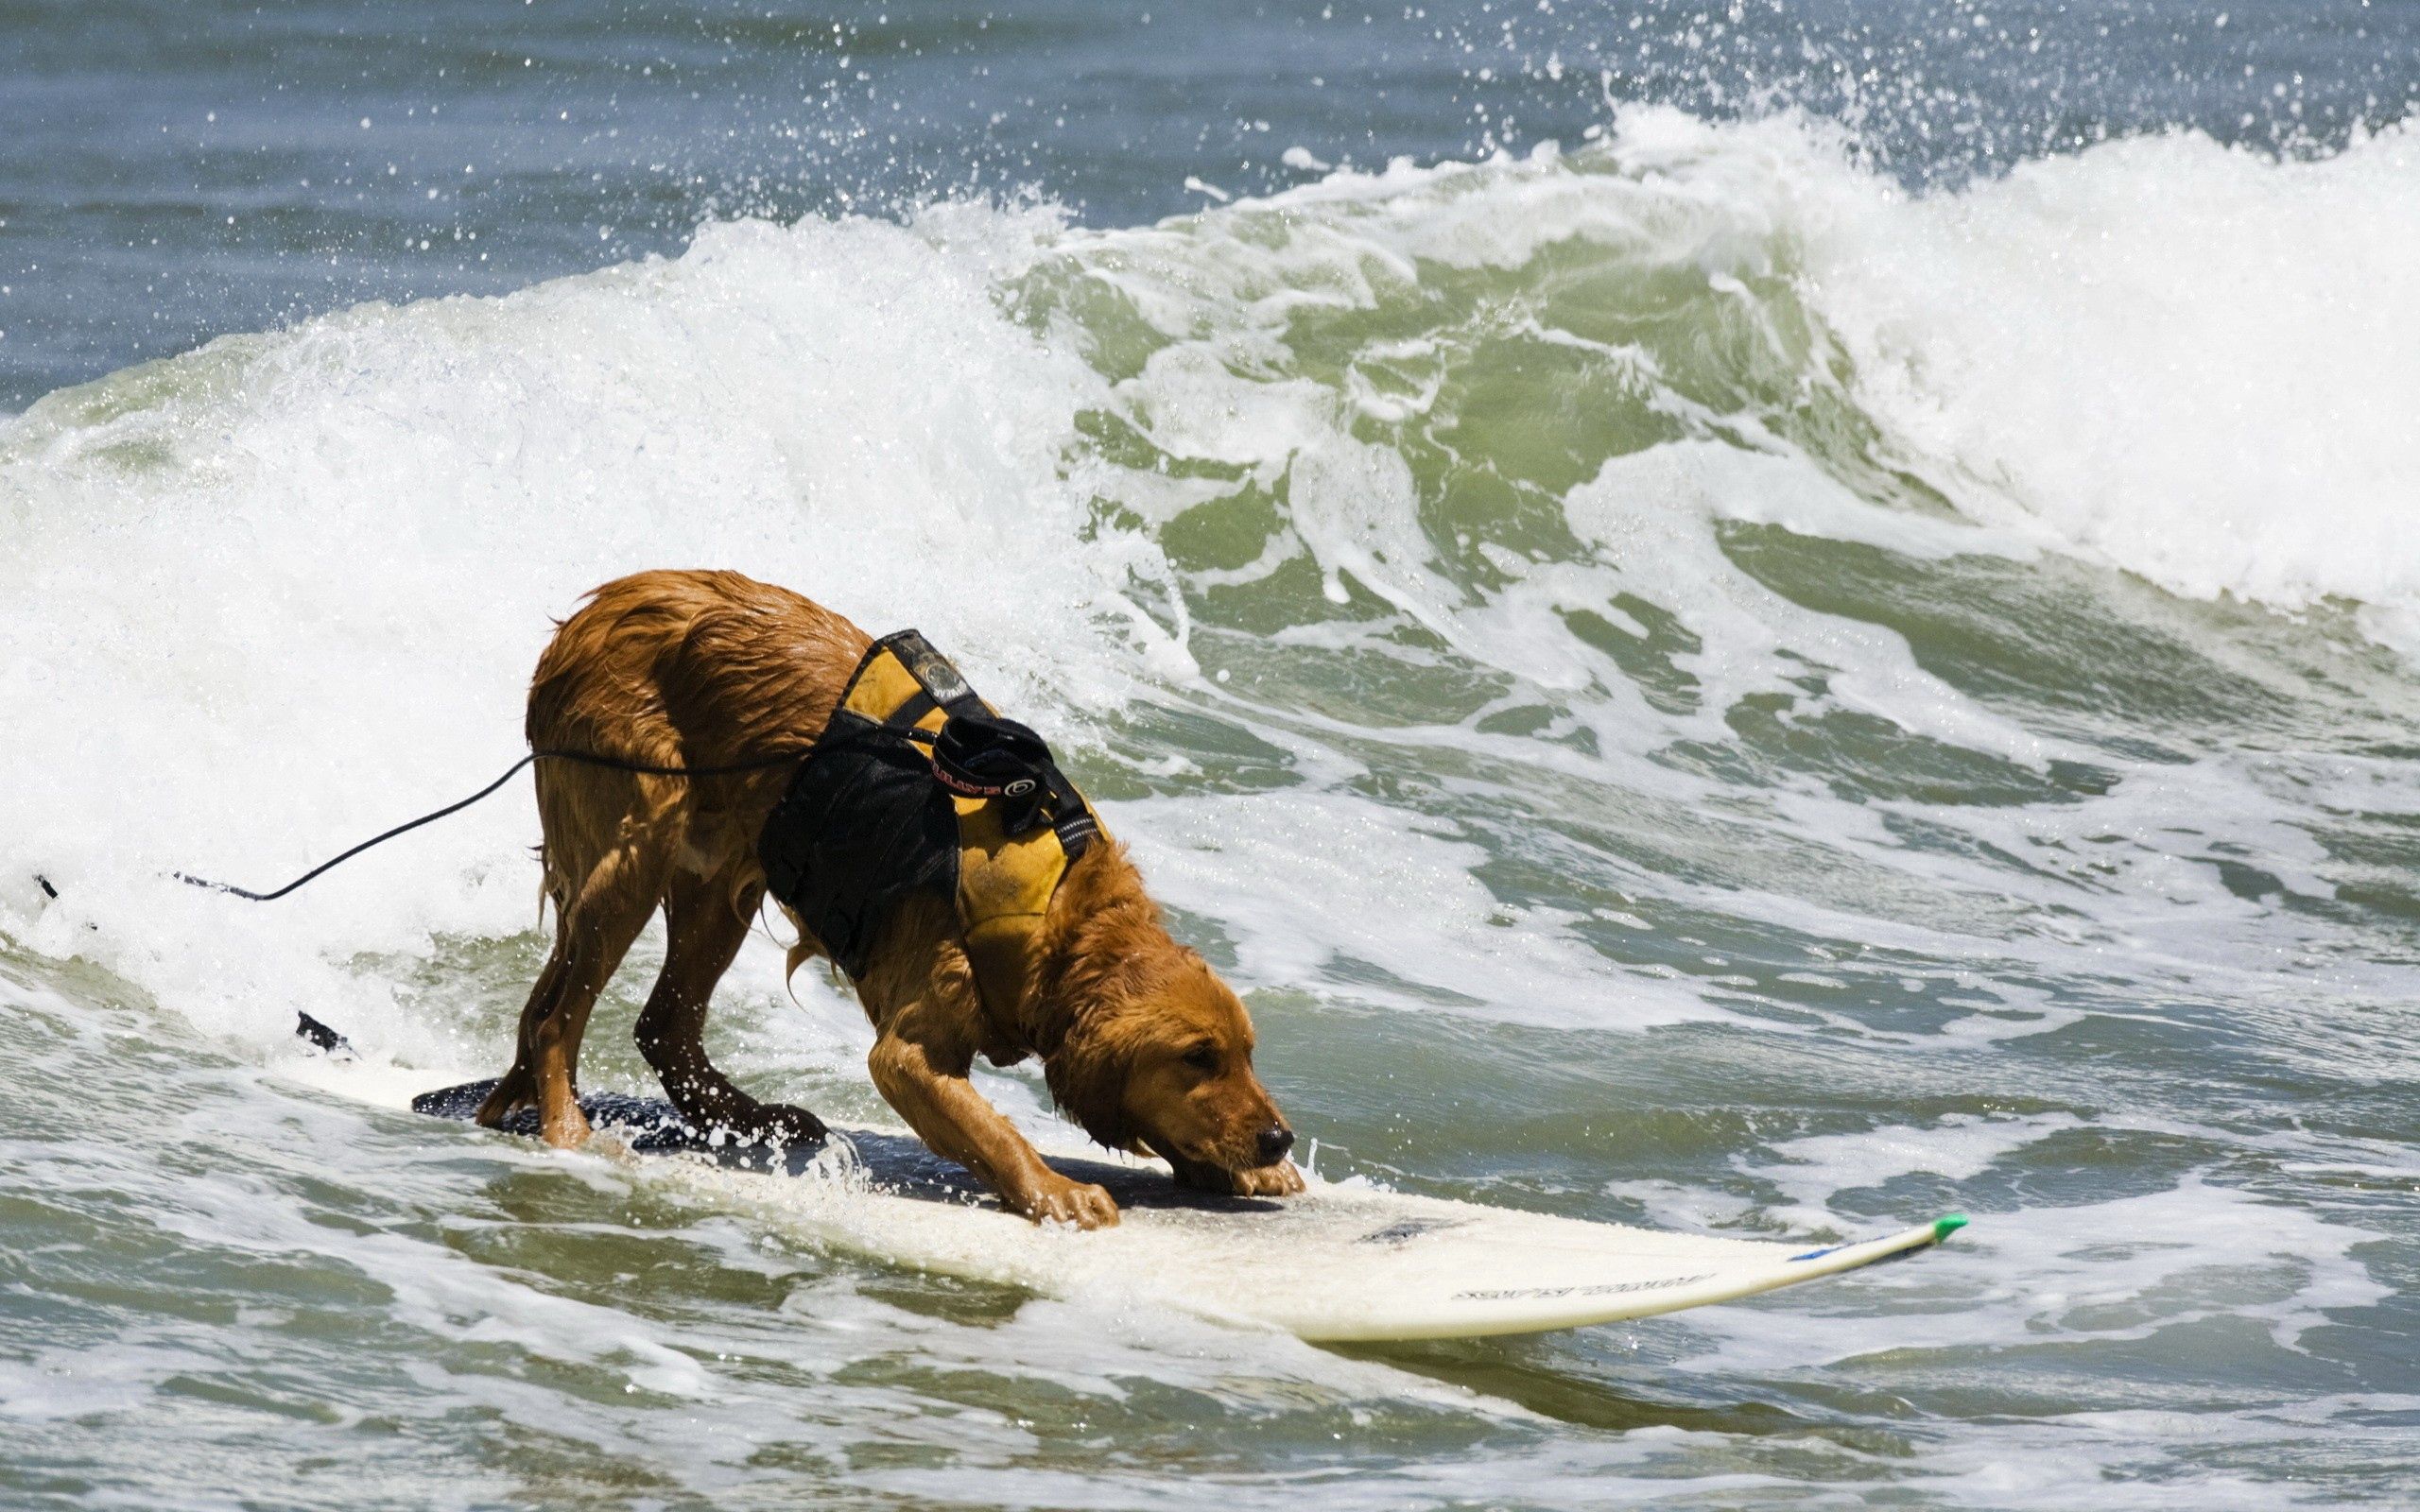 1920x1080 Background animals, water, sea, waves, serfing, dog, surf